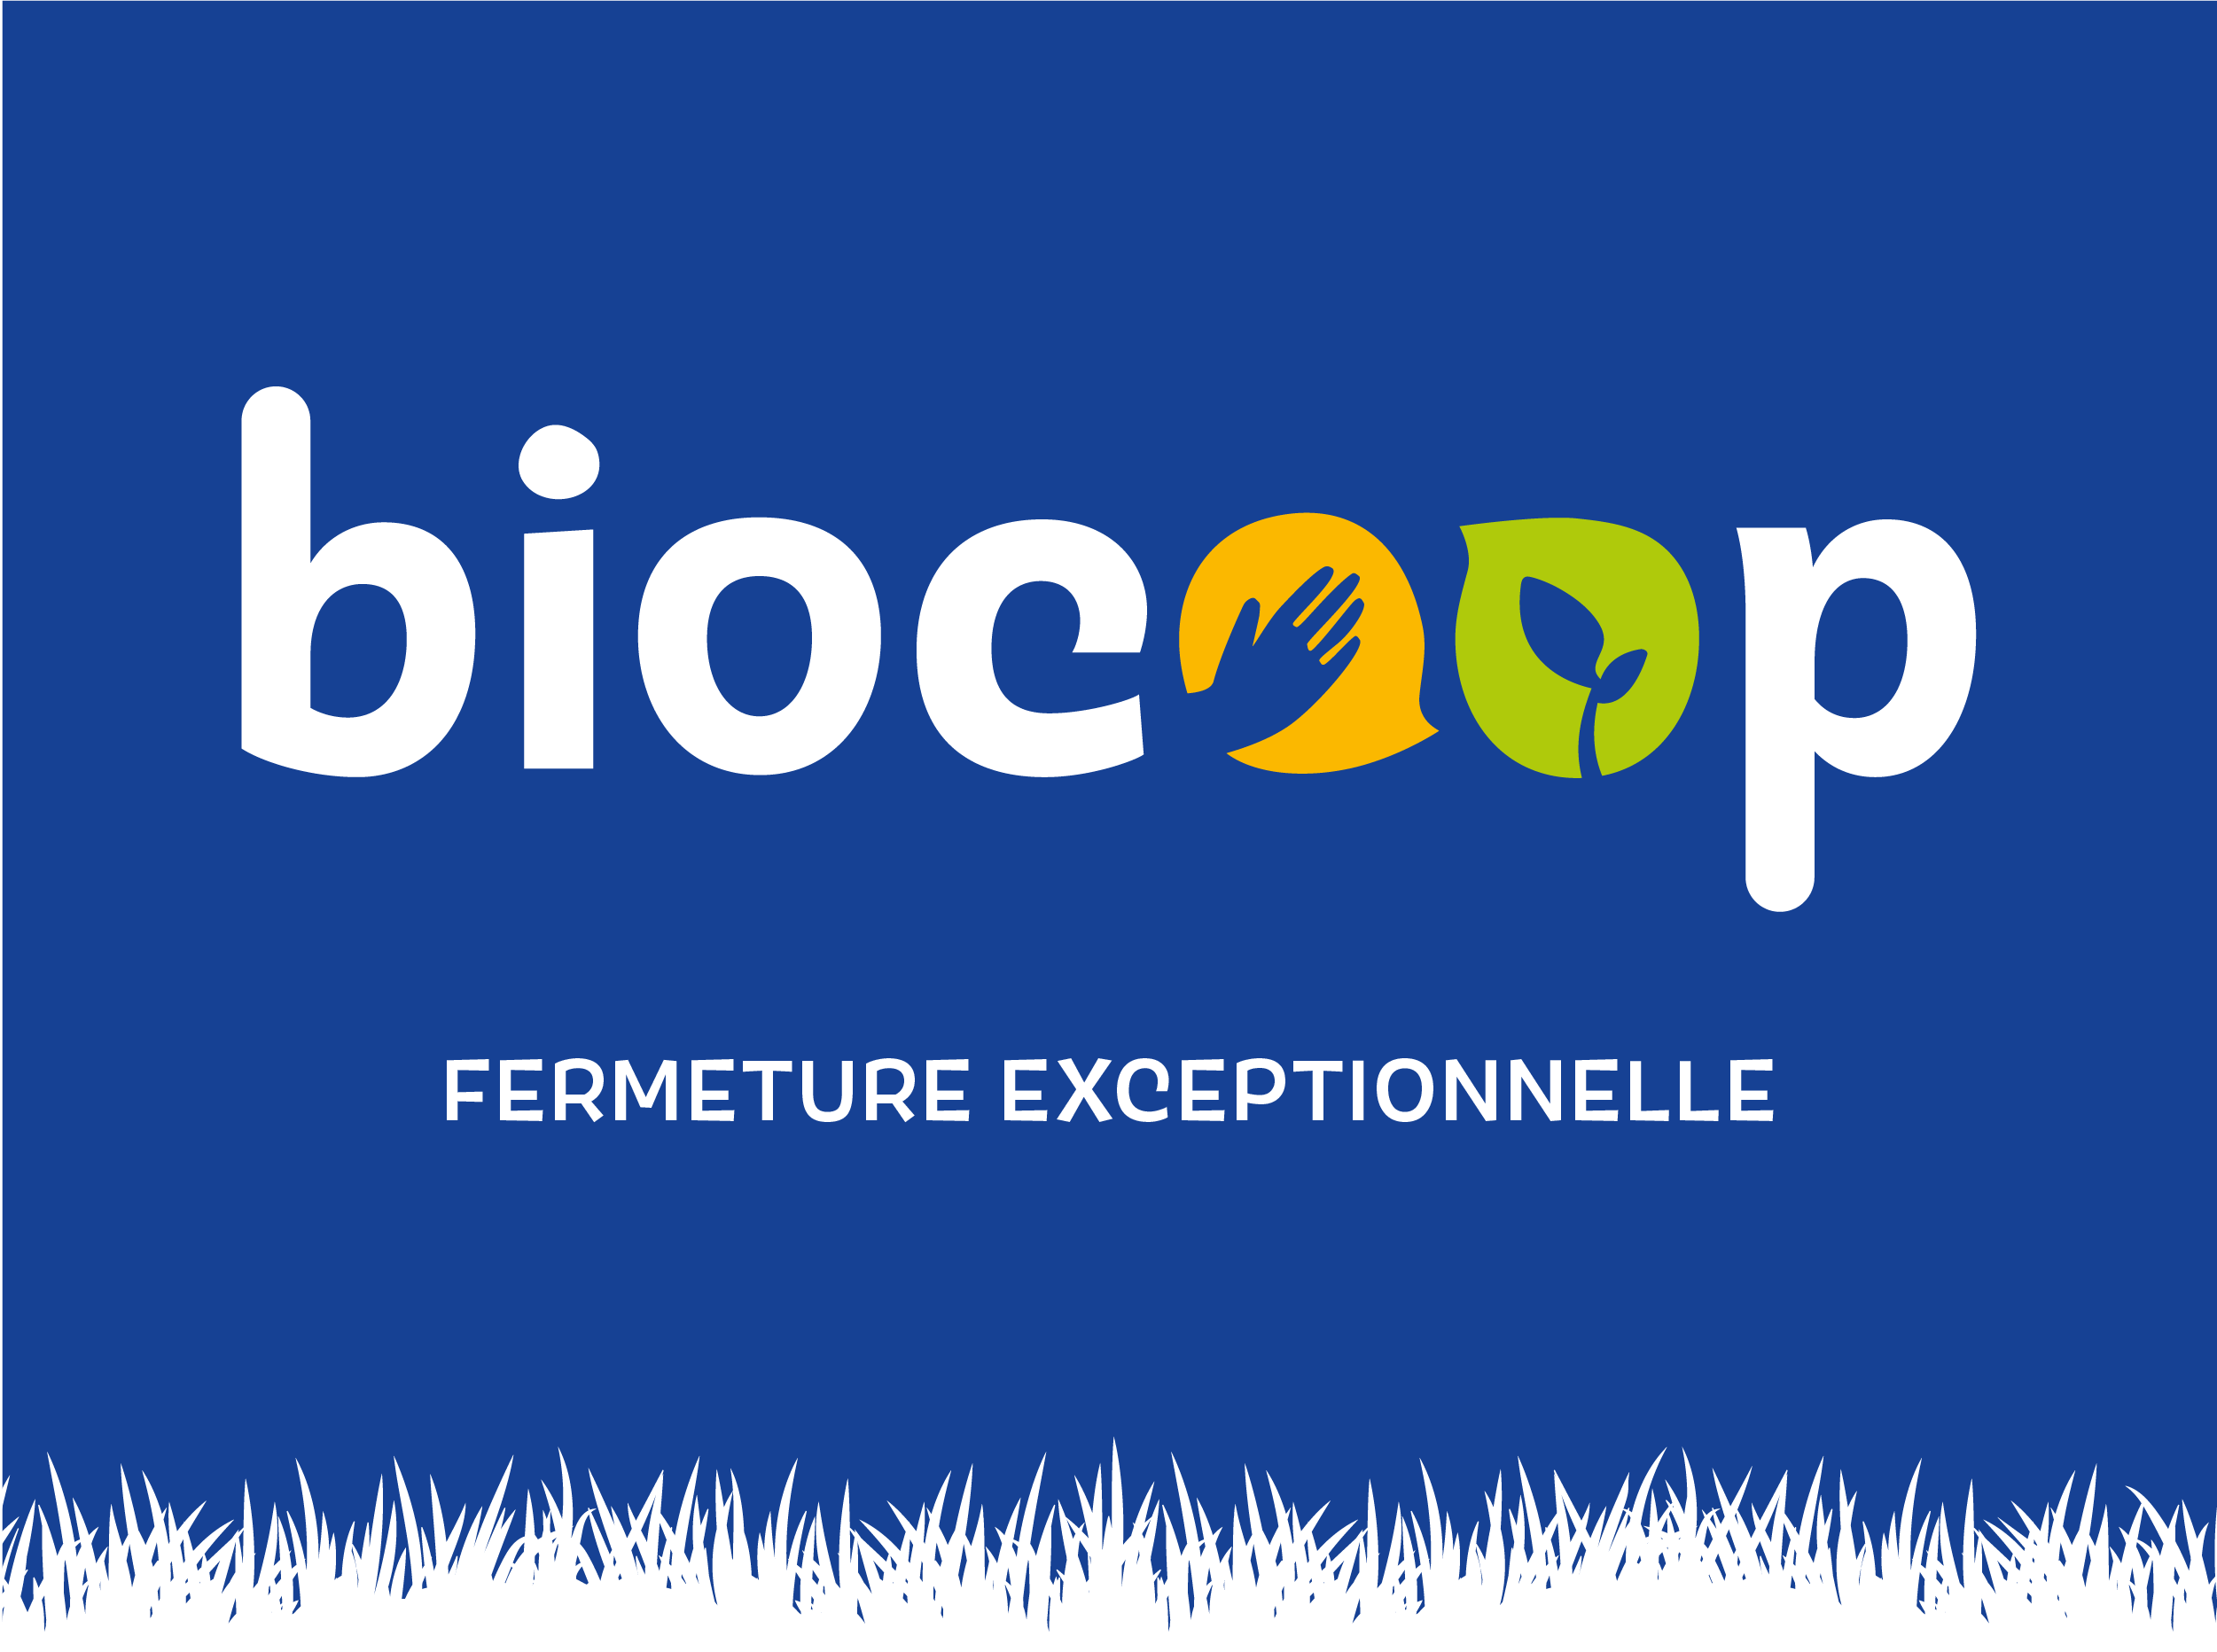 ➡️ Votre magasin Biocoop Fréquence Bio sera exceptionnellement fermé les 1er et 8 mai ⬅️